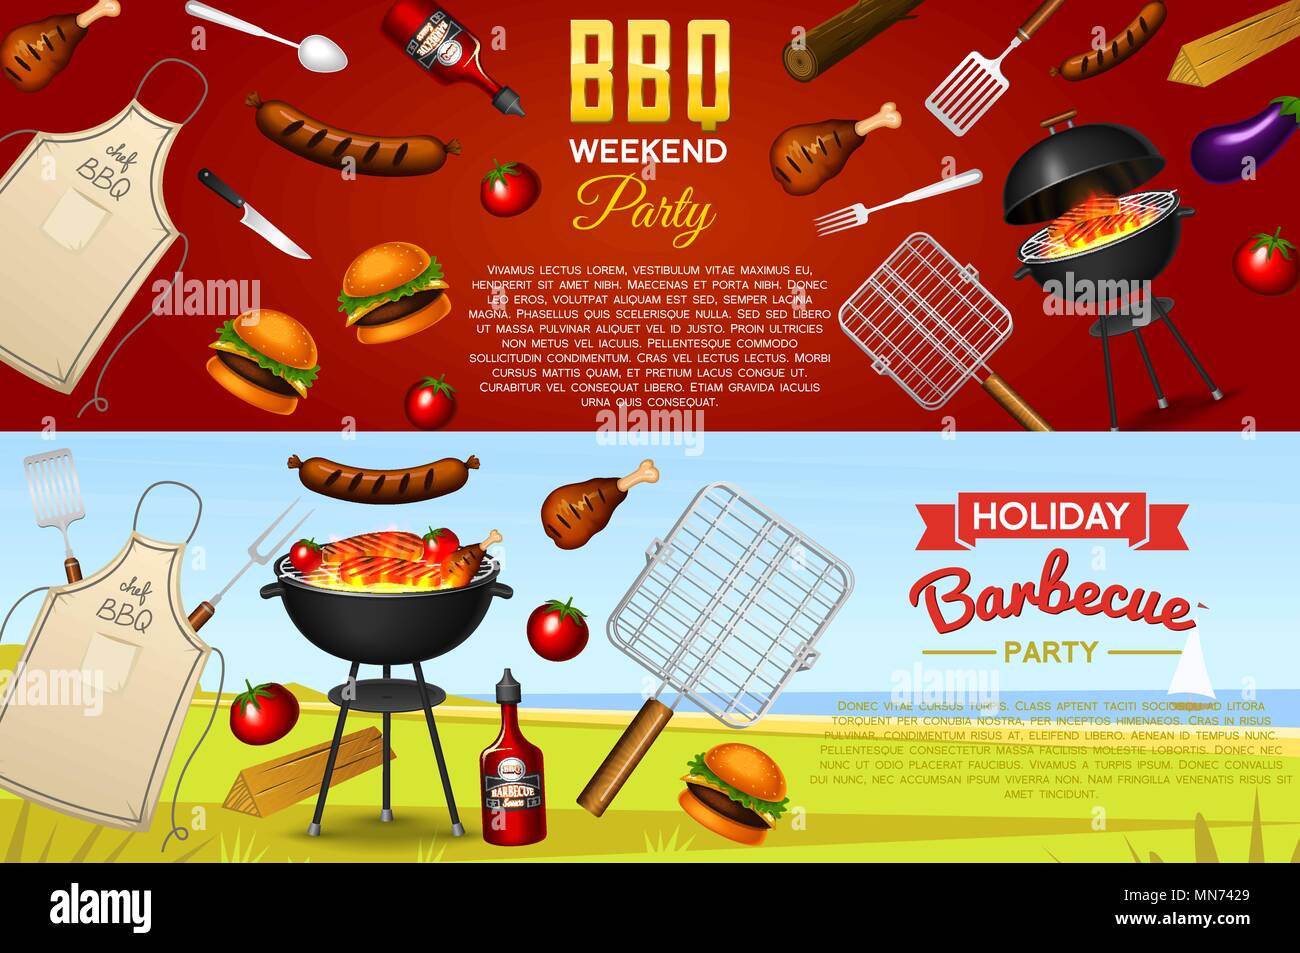 Phần tử Lò nướng Barbecue đặt riêng trên nền đỏ. Bữa tiệc BBQ...: Tận hưởng hương vị thơm ngon và không khí vui tươi của bữa tiệc BBQ ngoài trời với phần tử lò nướng Barbecue đầy ấn tượng được đặt riêng trên nền đỏ rực rỡ. 